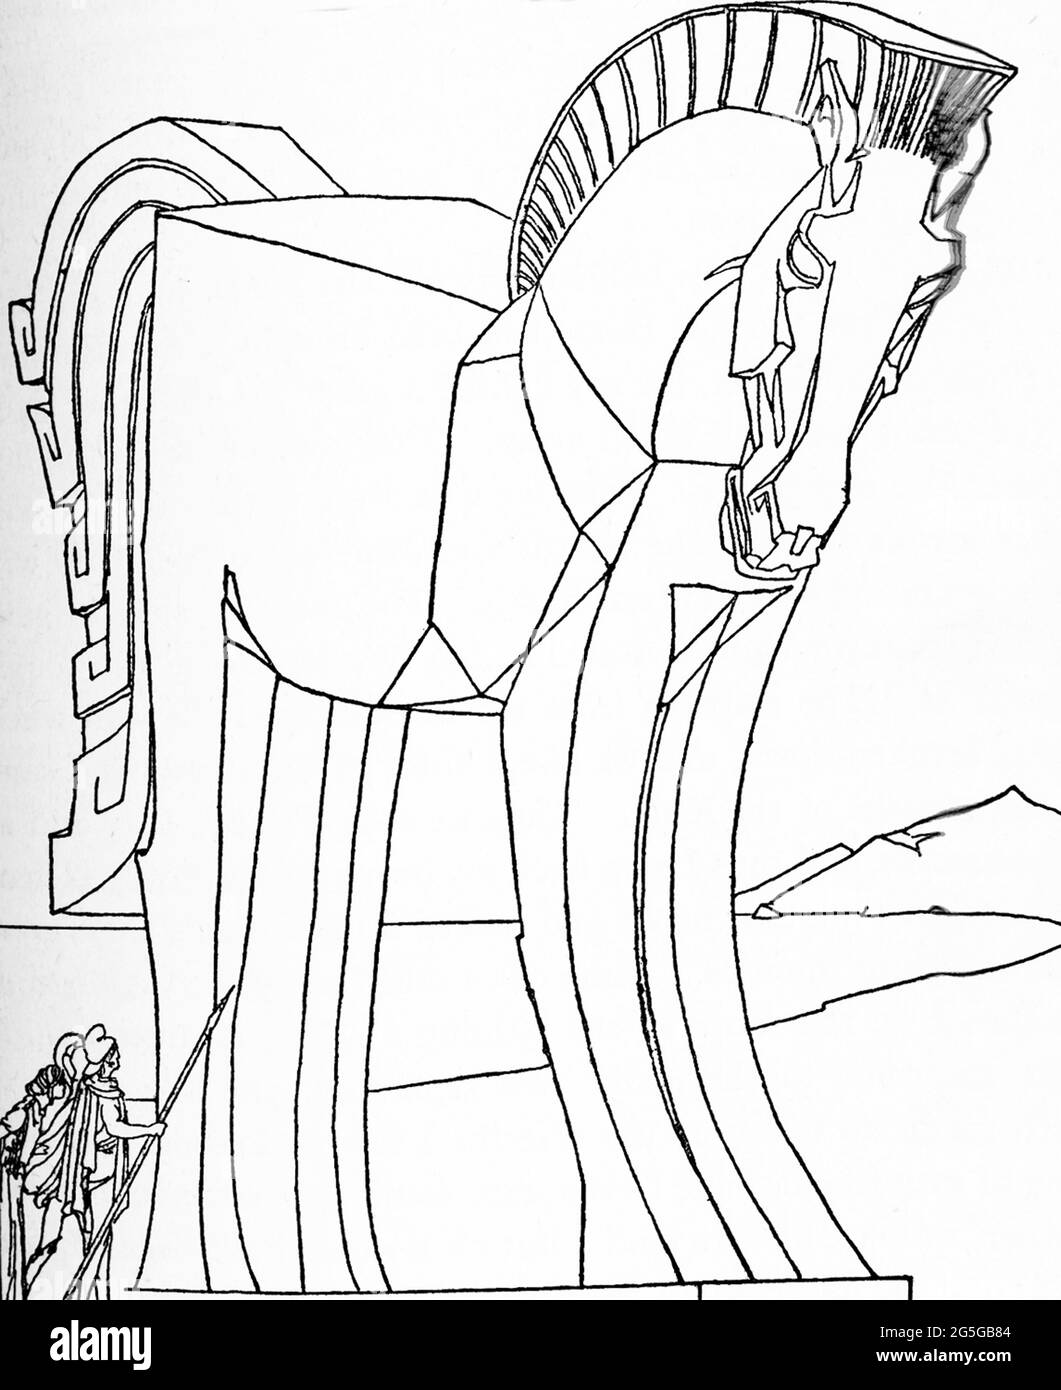 Secondo la mitologia greca e romana, il Trojan Laocoon avvertì i suoi compagni Troiani di non portare il cavallo di legno gigante (visto qui), dotato loro dai greci, all'interno delle mura di troia. Poseidon, il dio del mare e una divinità che favorì i greci, mandò dei serpenti marini dal mare a strangere Laocoon. Il cavallo era l'idea dell'eroe greco Odysseo e i greci avevano un greco di nome Sinon dire ai Troiani che se i Troiani non lo portavano all'interno delle mura della città, i greci avrebbero sconfitto i Troiani. Questa illustrazione all'inizio del 1900 mostra i Trojan che si revellano nel pensiero che il cavallo era circa Foto Stock